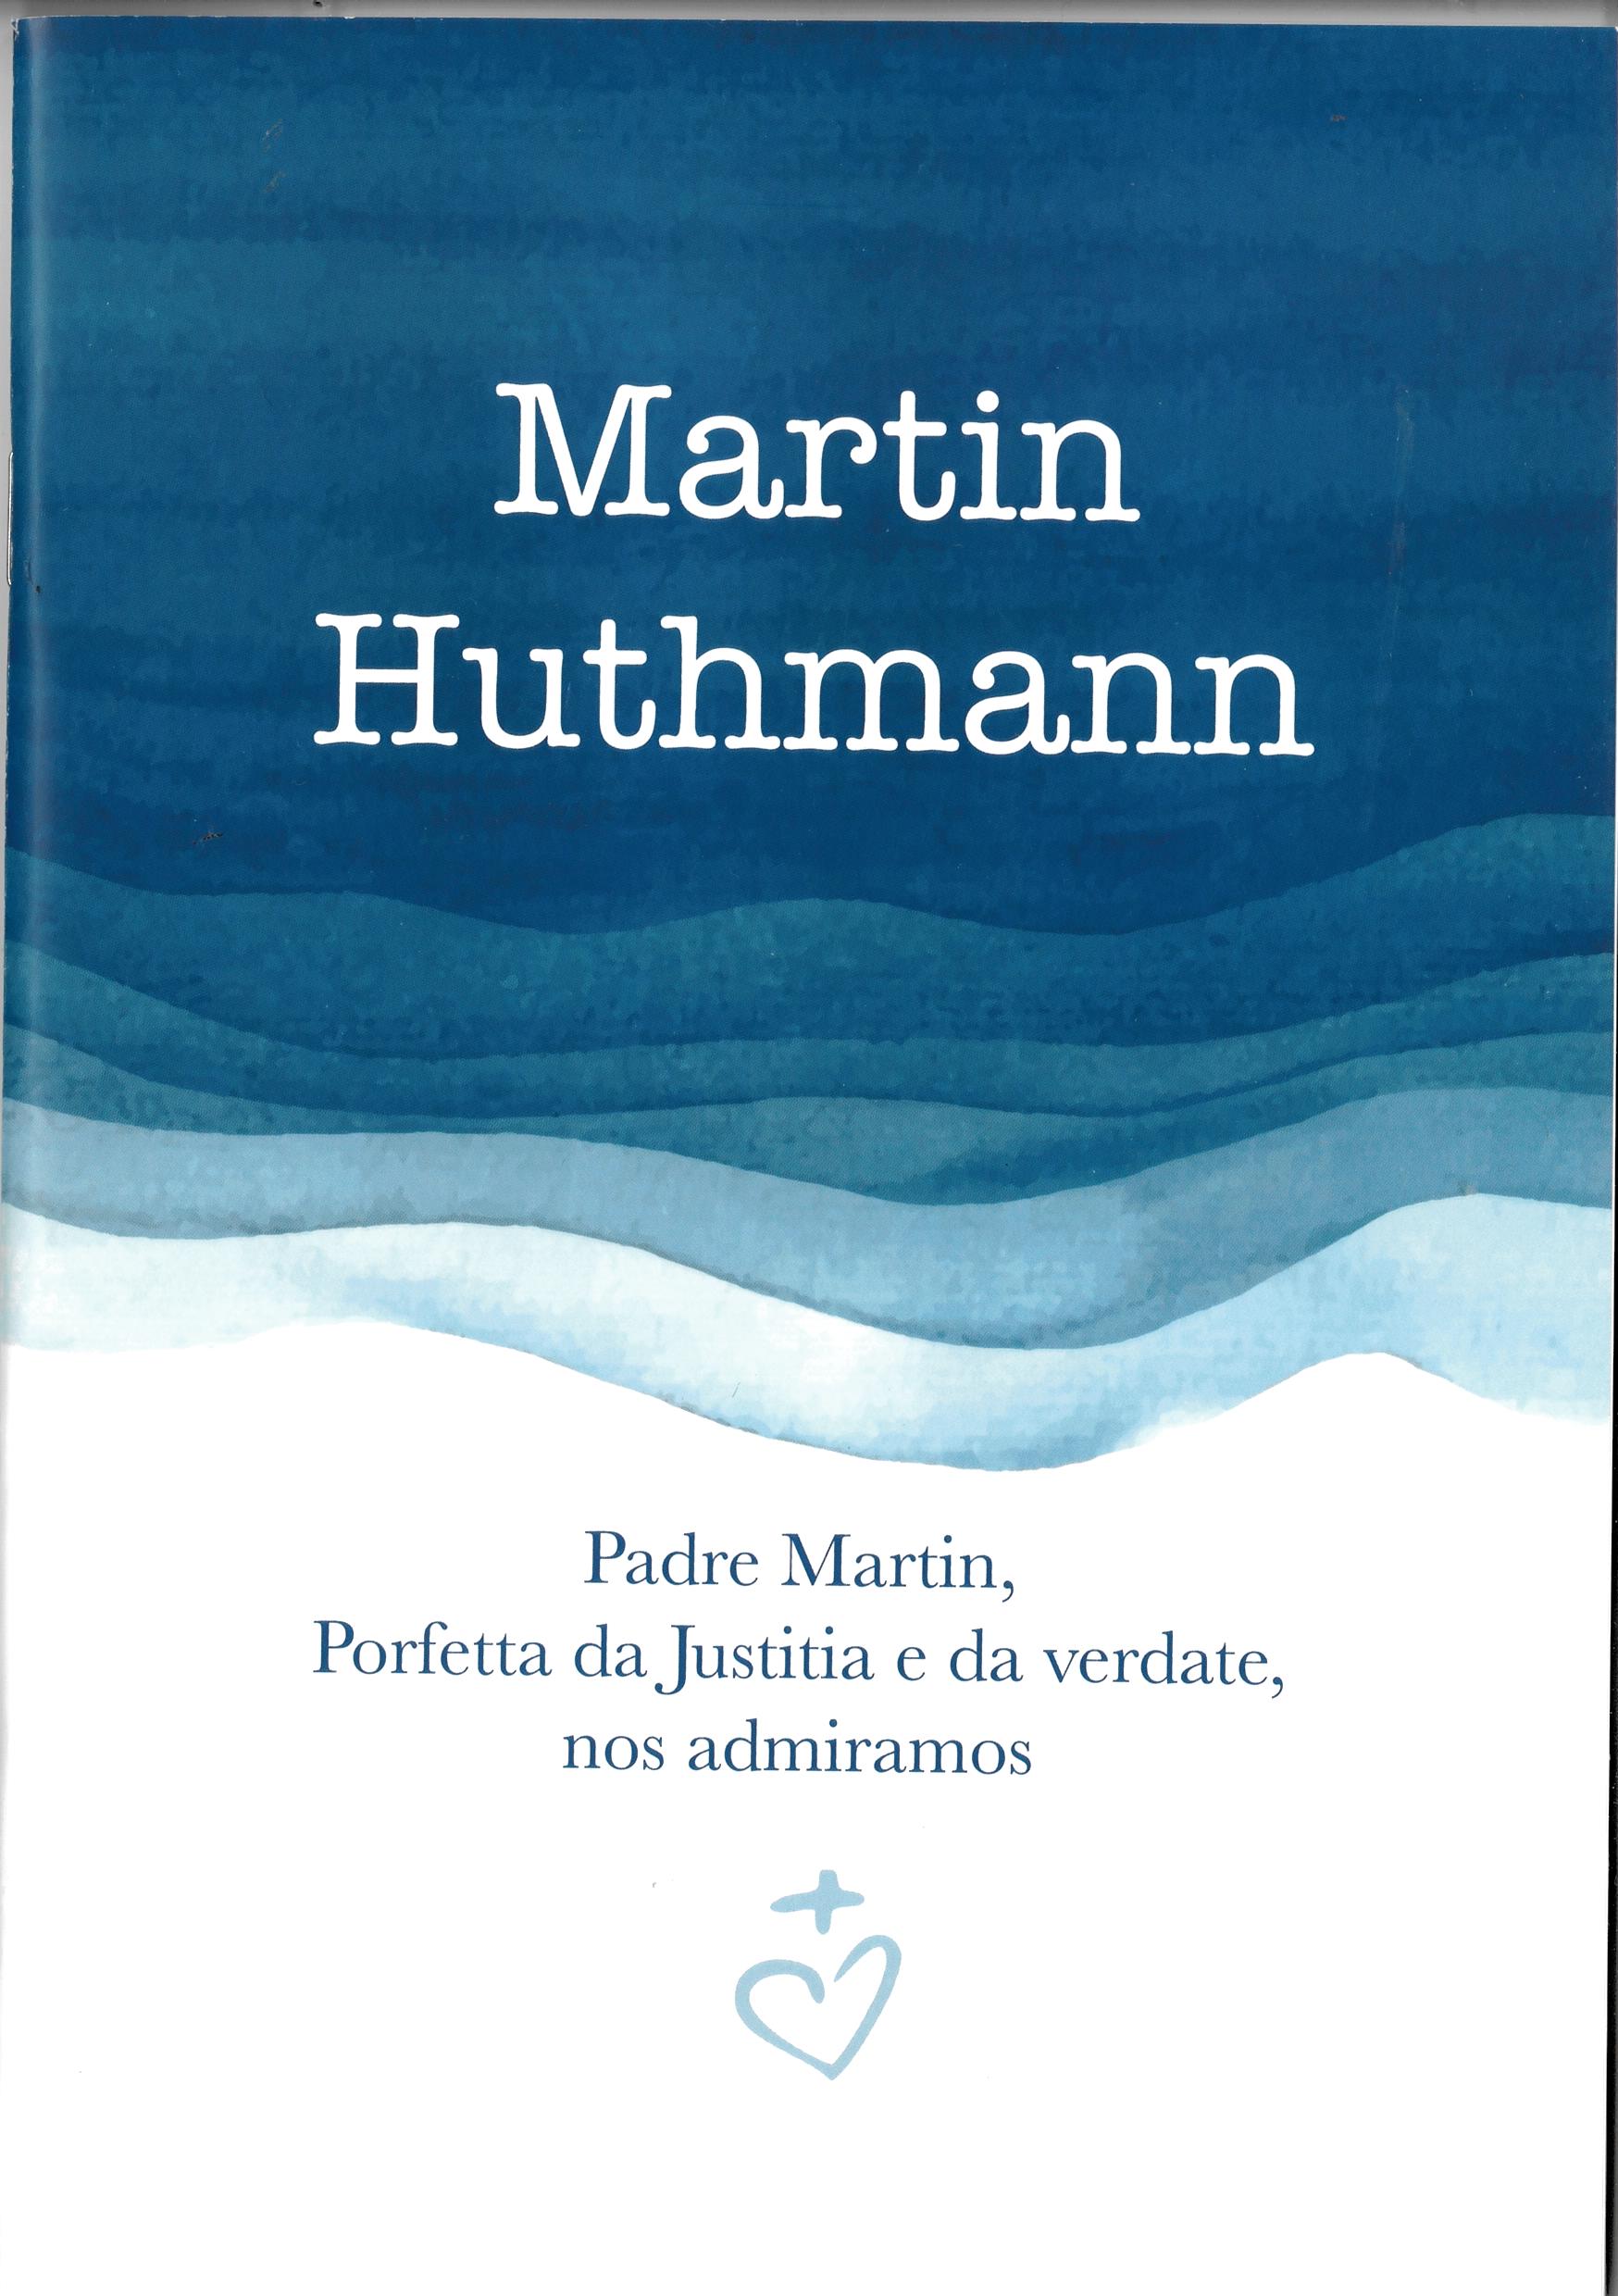 Martin Huthmann